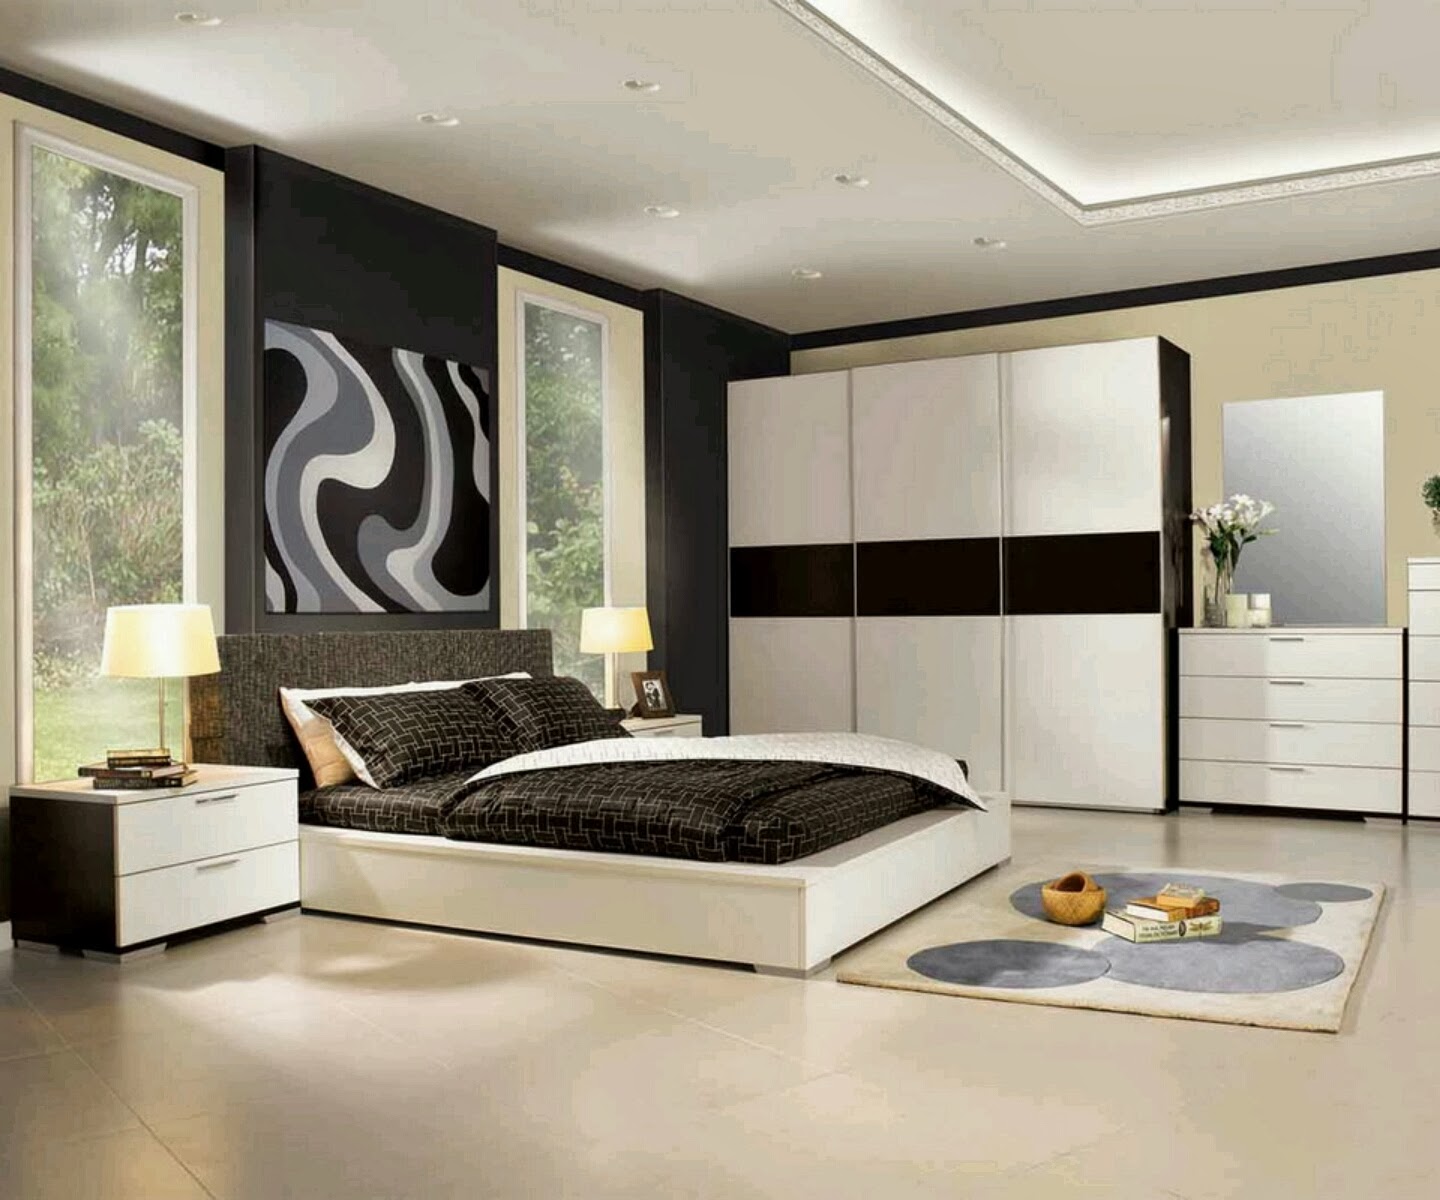 Bedroom Furniture Design Plans